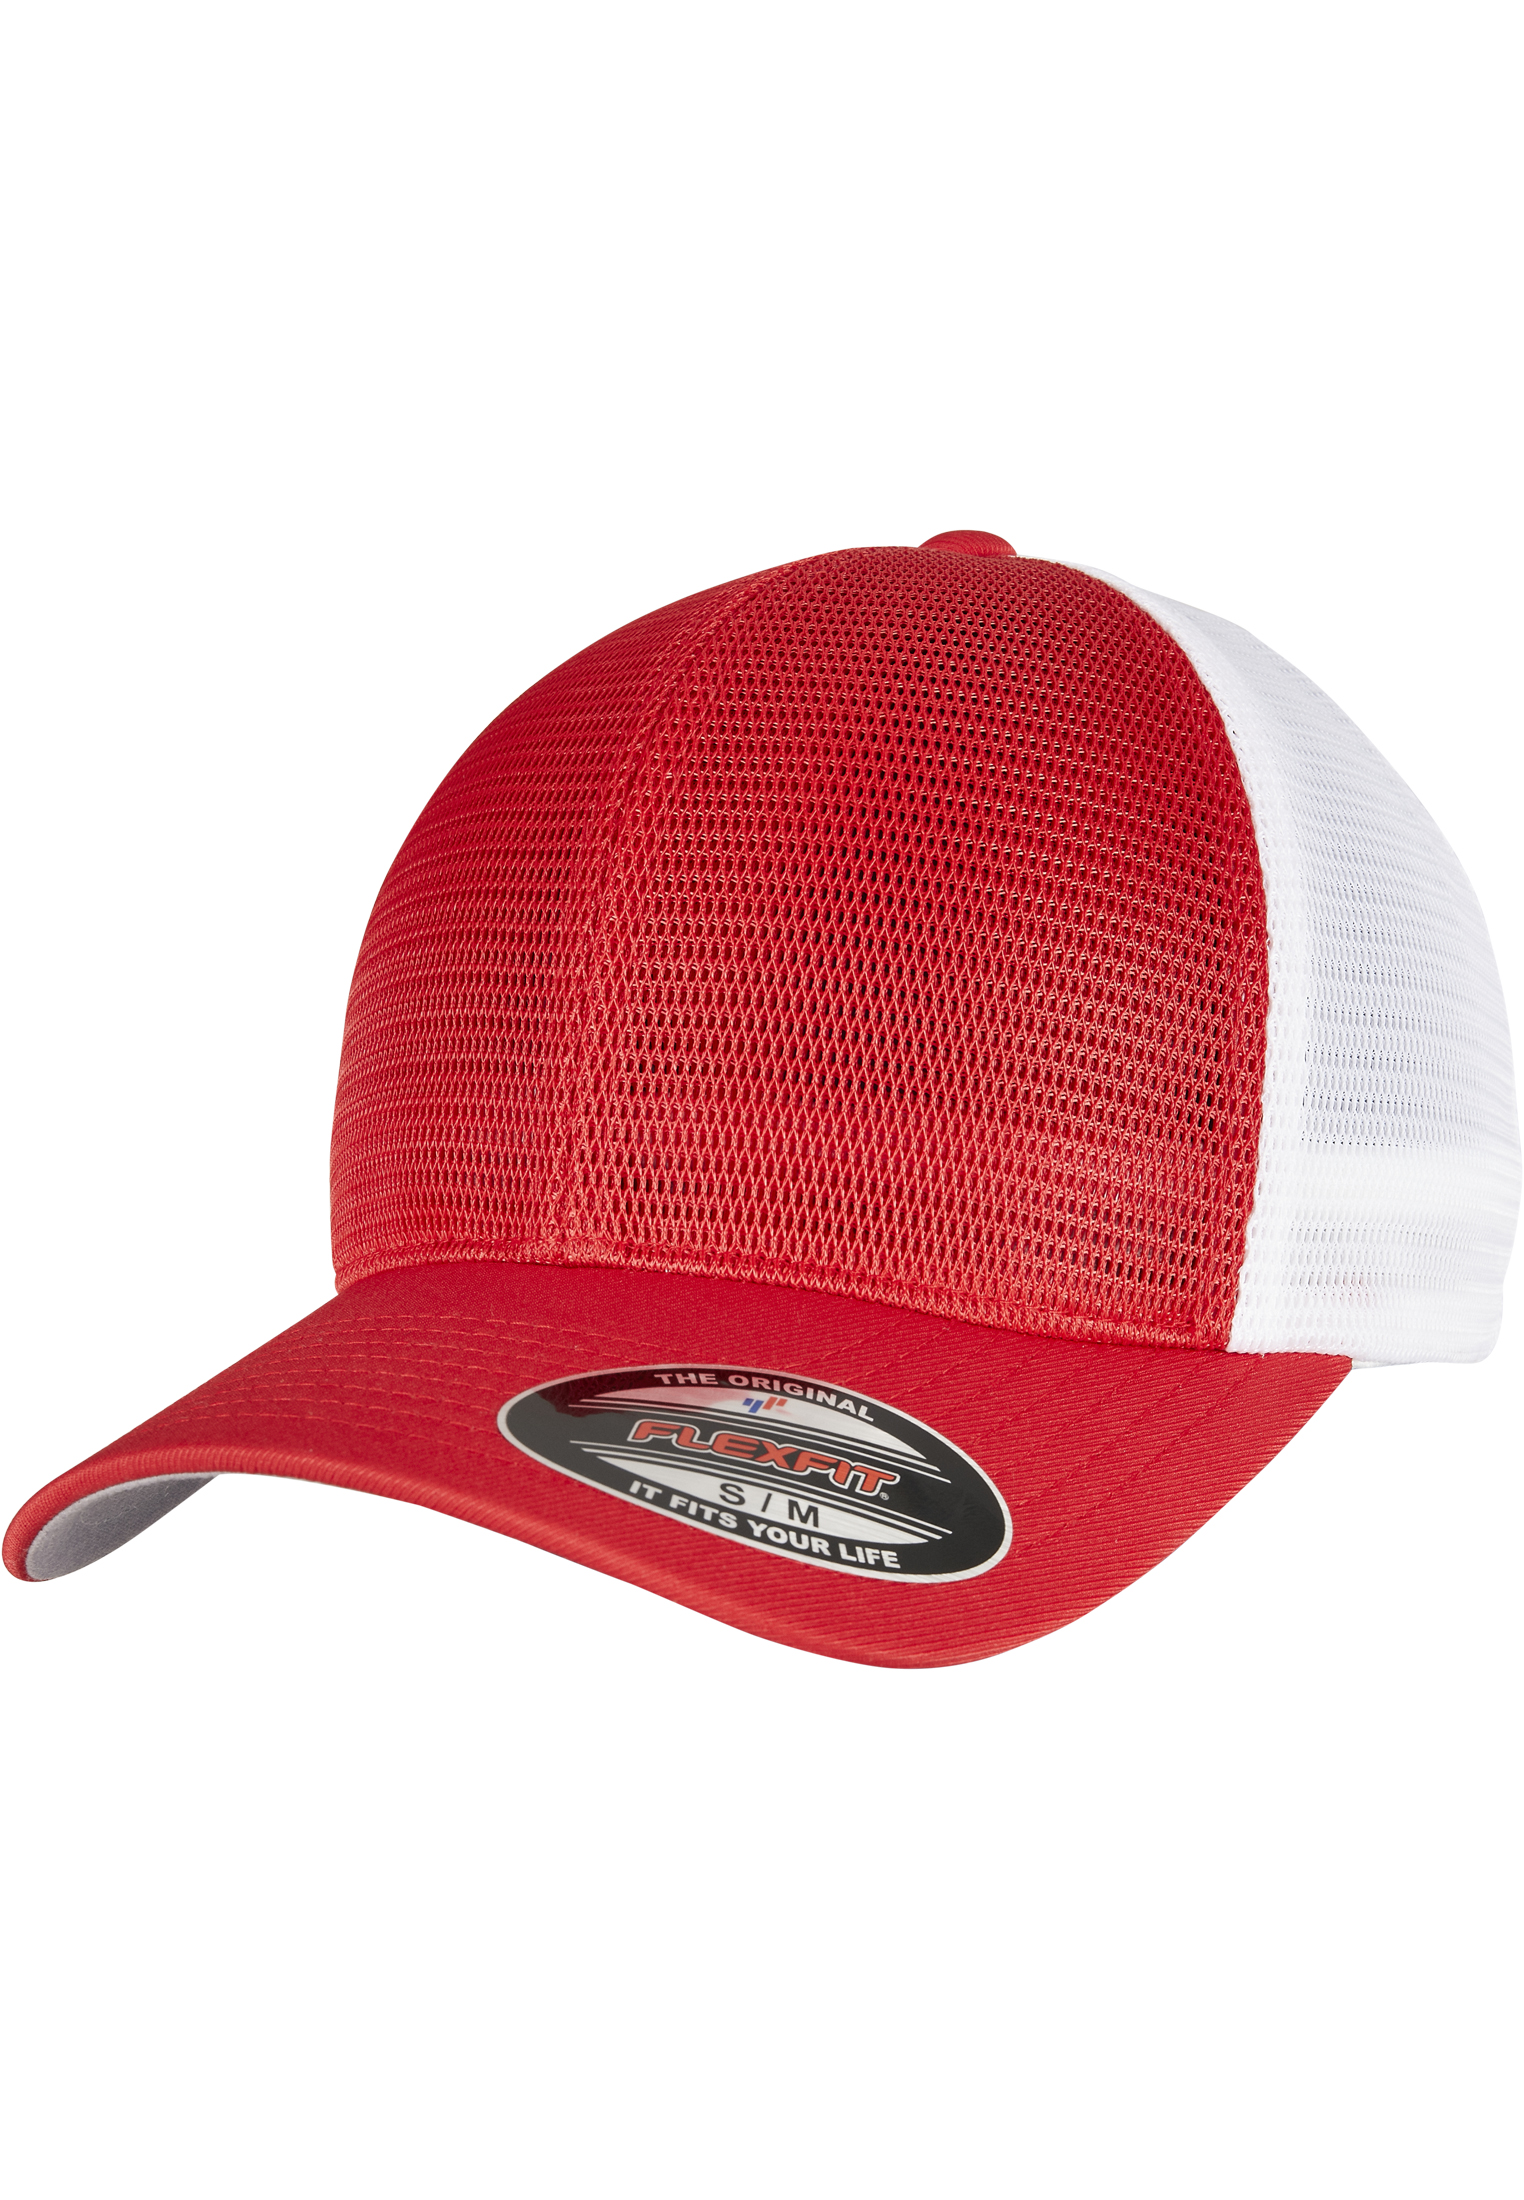 Trucker FLEXFIT 360 OMNIMESH CAP 2-TONE in Farbe red/white